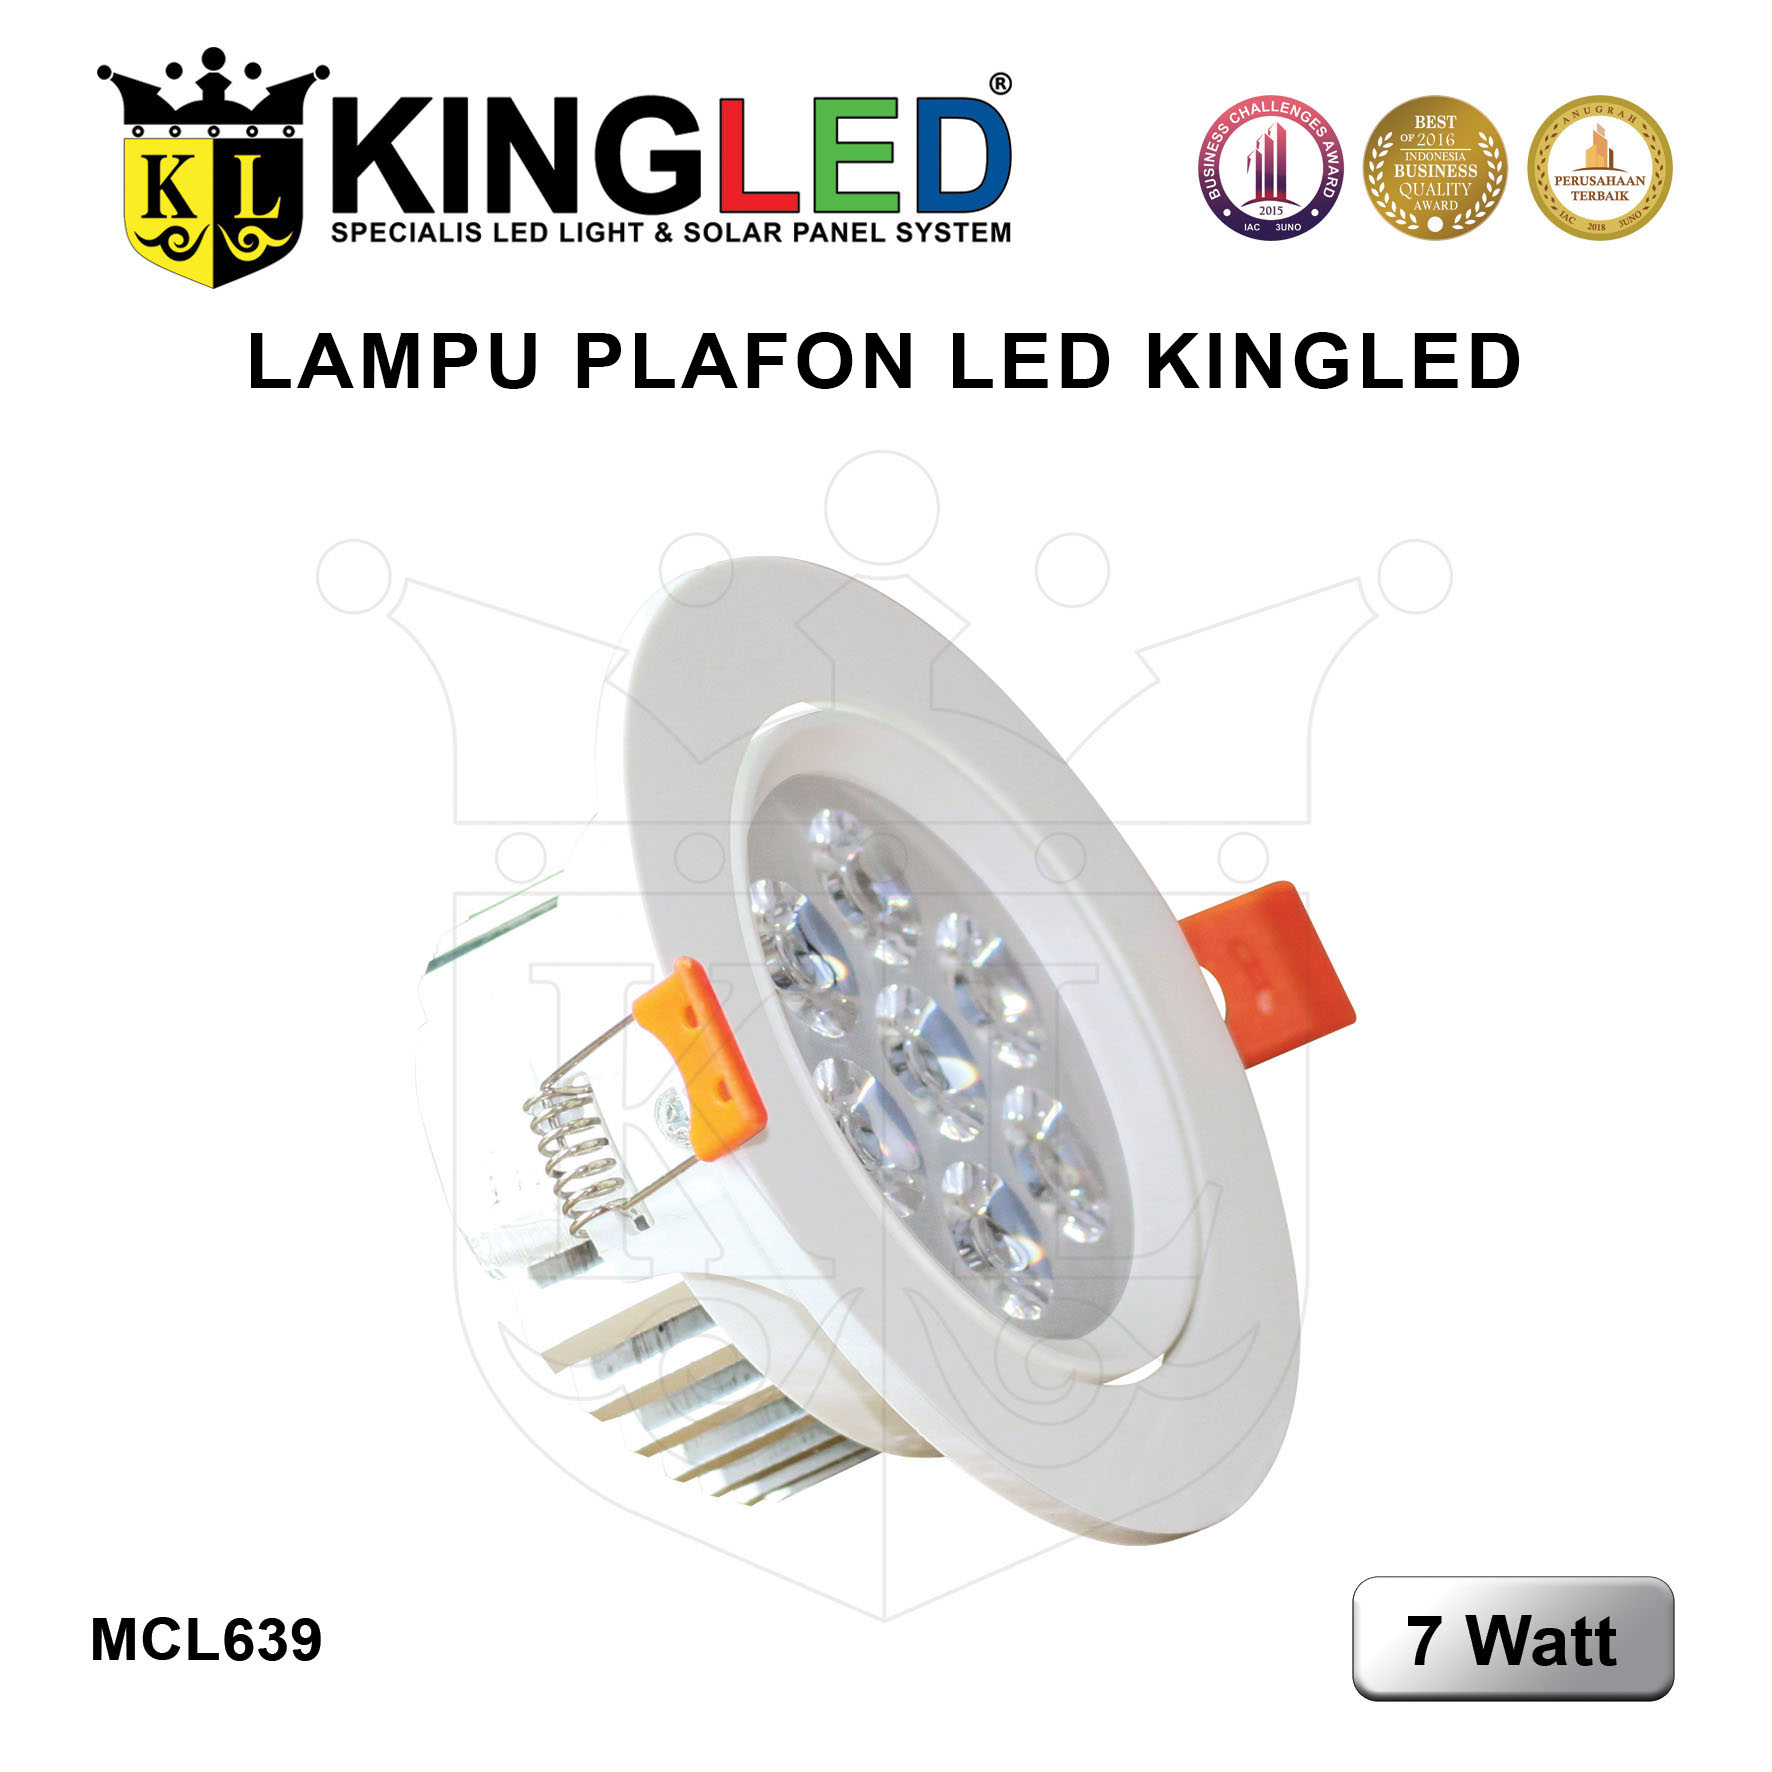 Lampu Plafon LED 7 Watt / LED DownLight 7 Watt